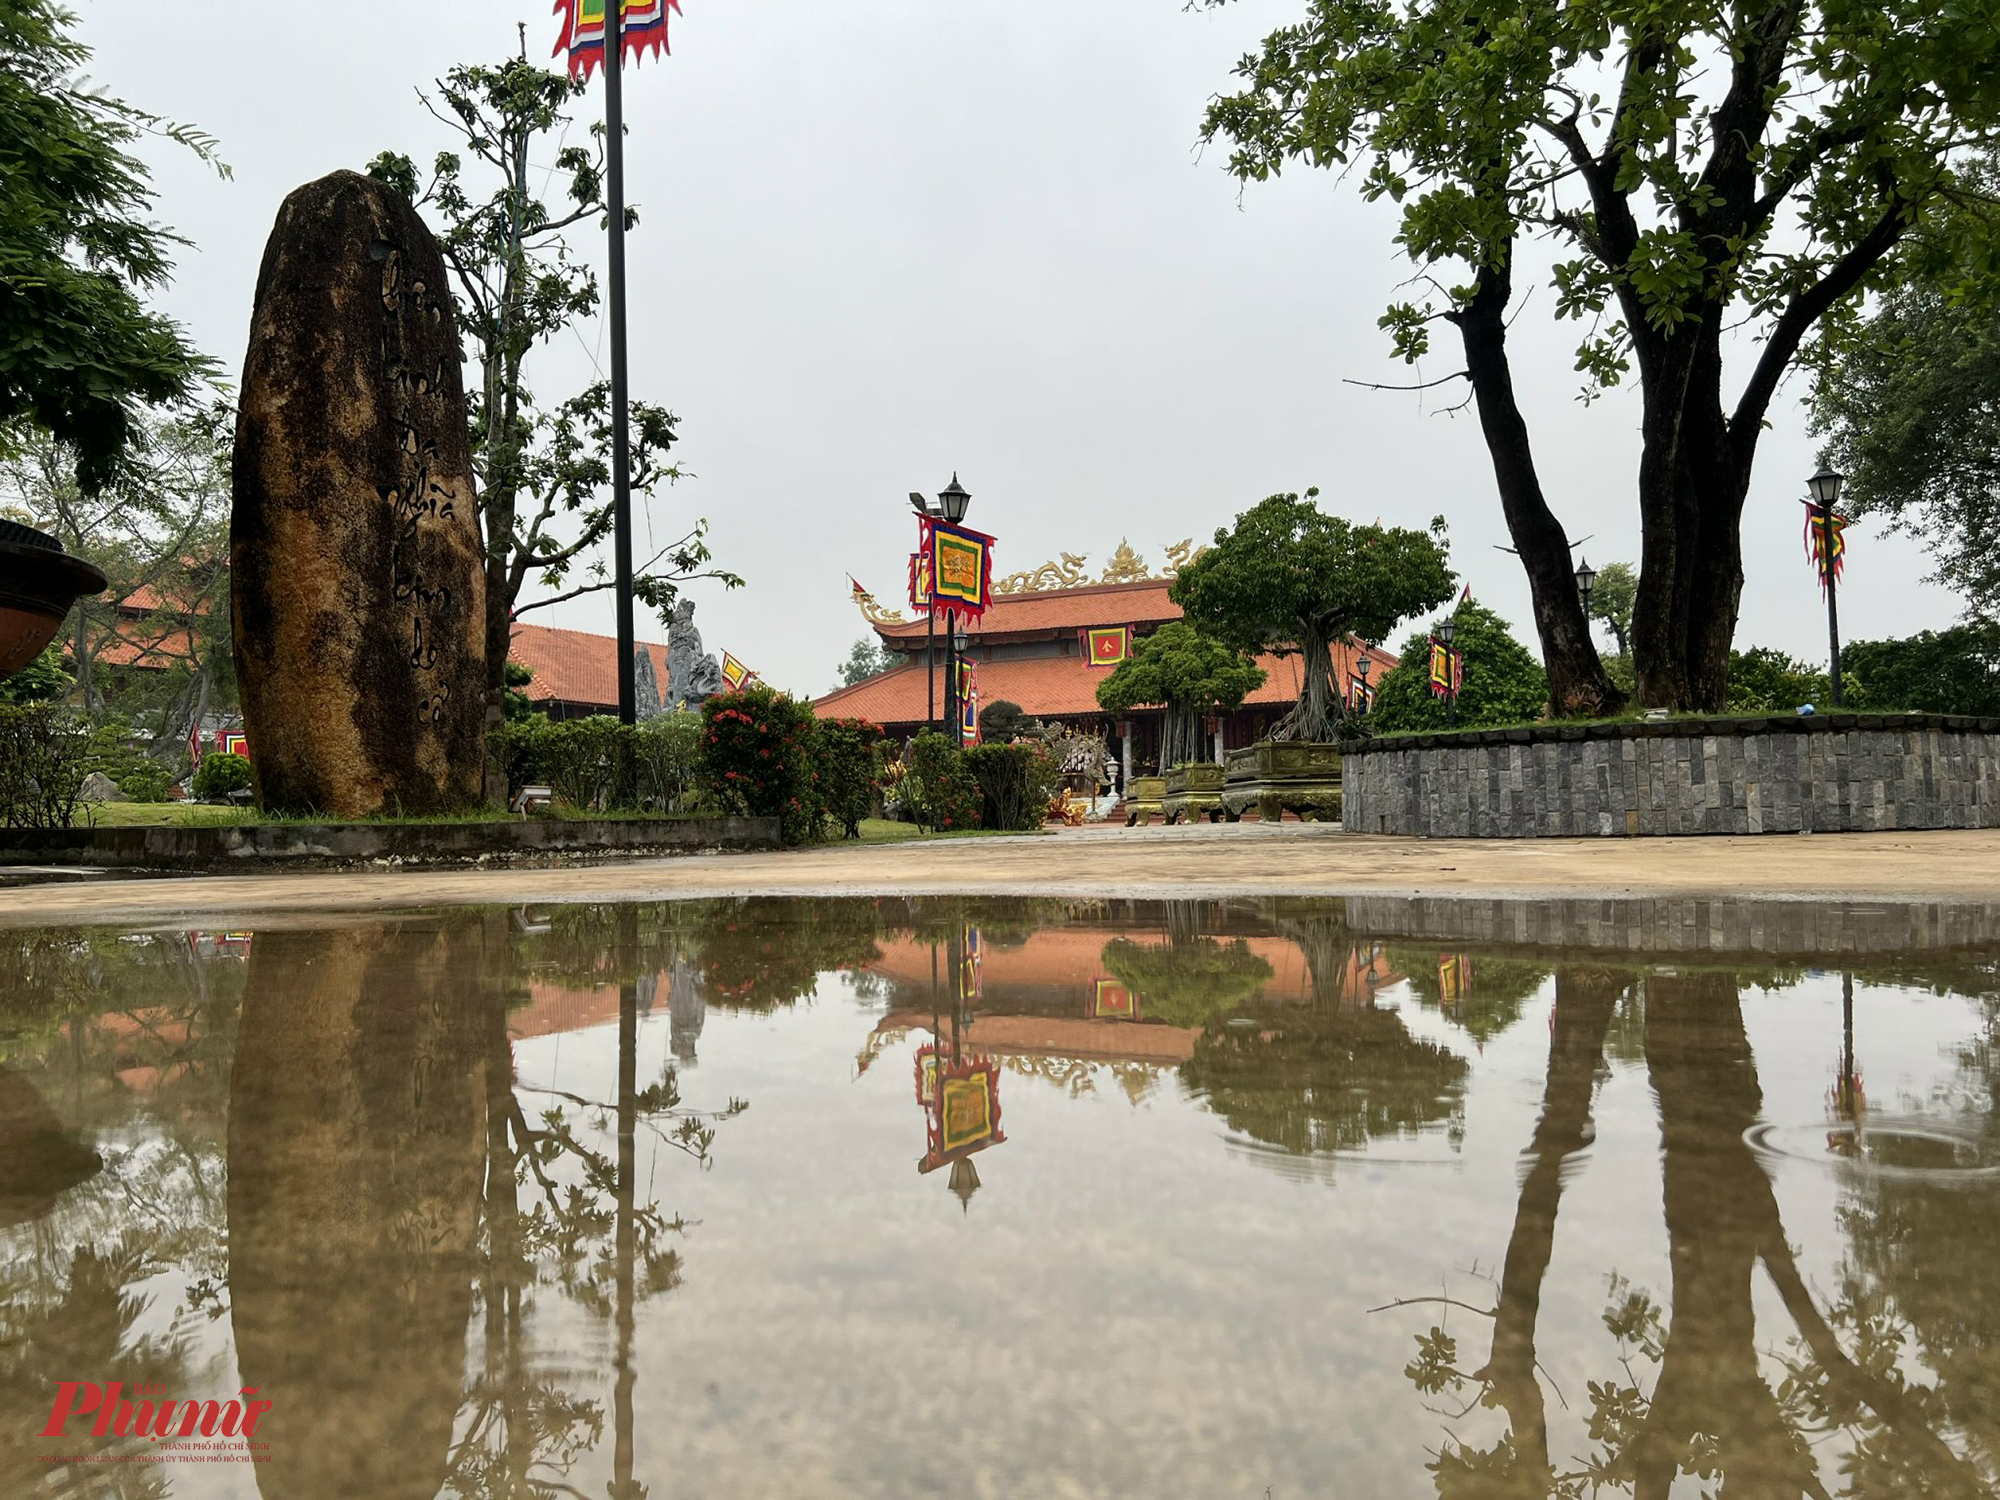 Trận mưa lớn tối qua khiến một số nơi trong đền thờ Tổ nghiệp Tâm Linh Việt vẫn còn đọng nước. Sáng 7/9, thời tiết cũng không tốt, có mưa nhẹ.